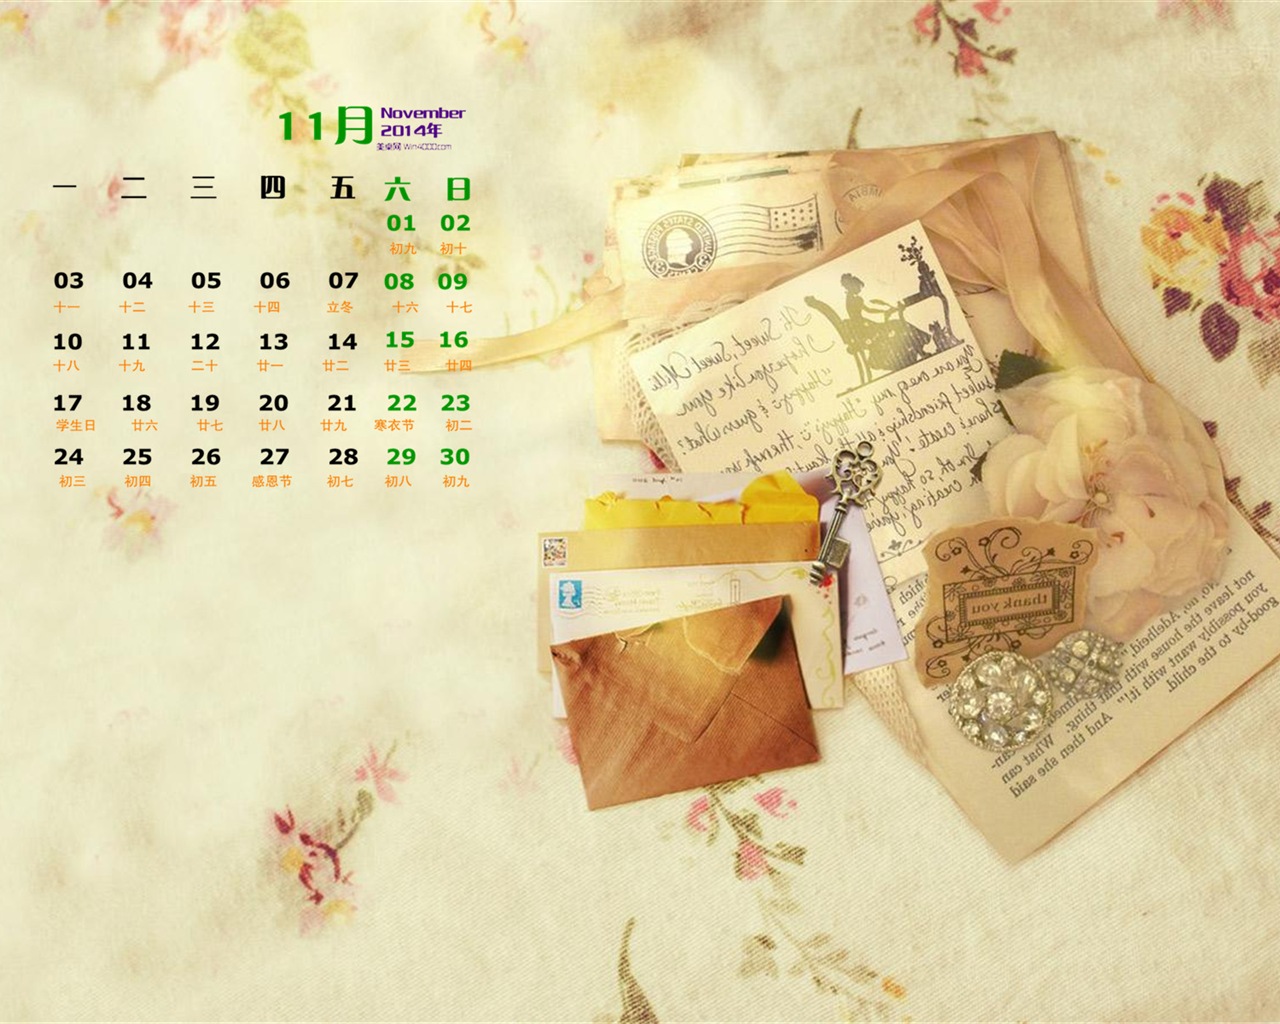 11 2014 fondos de escritorio calendario (1) #16 - 1280x1024